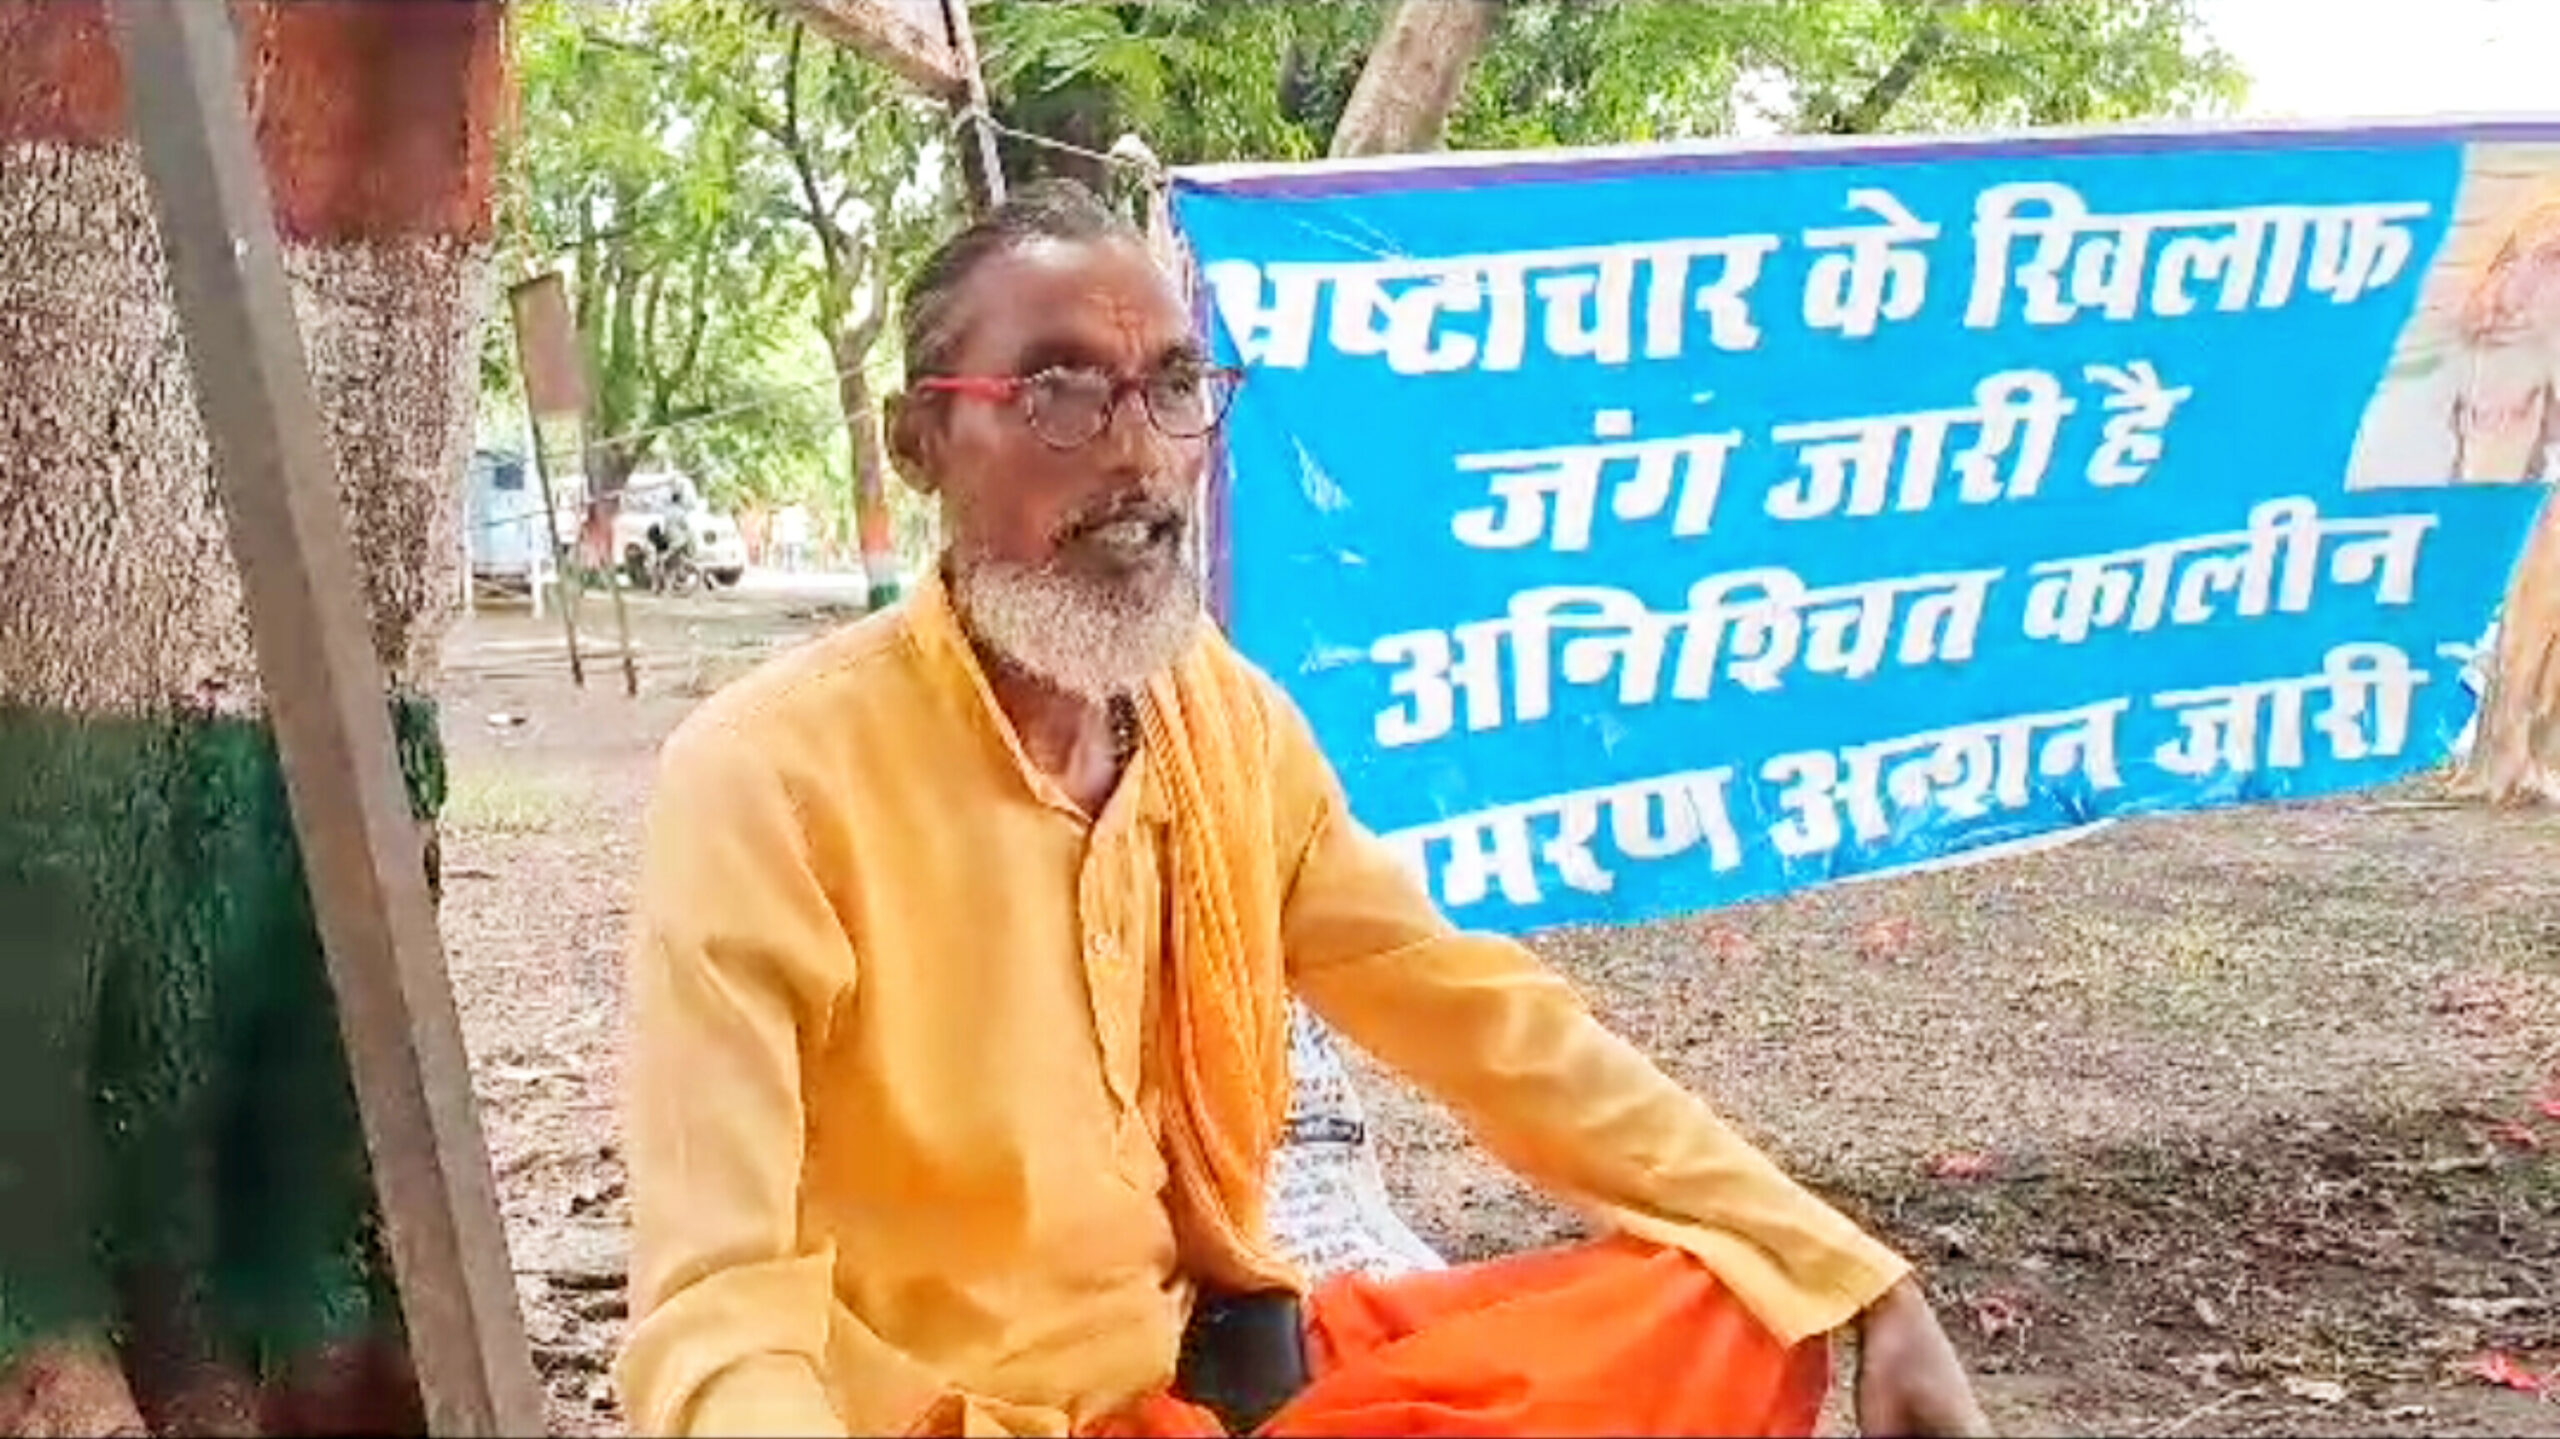 Kanpur Dehat:योगी बाबा की सरकार में एक पुजारी को प्रताड़ित कर रहे हैं अधिकारी -घनश्याम तिवारी (पुजारी)